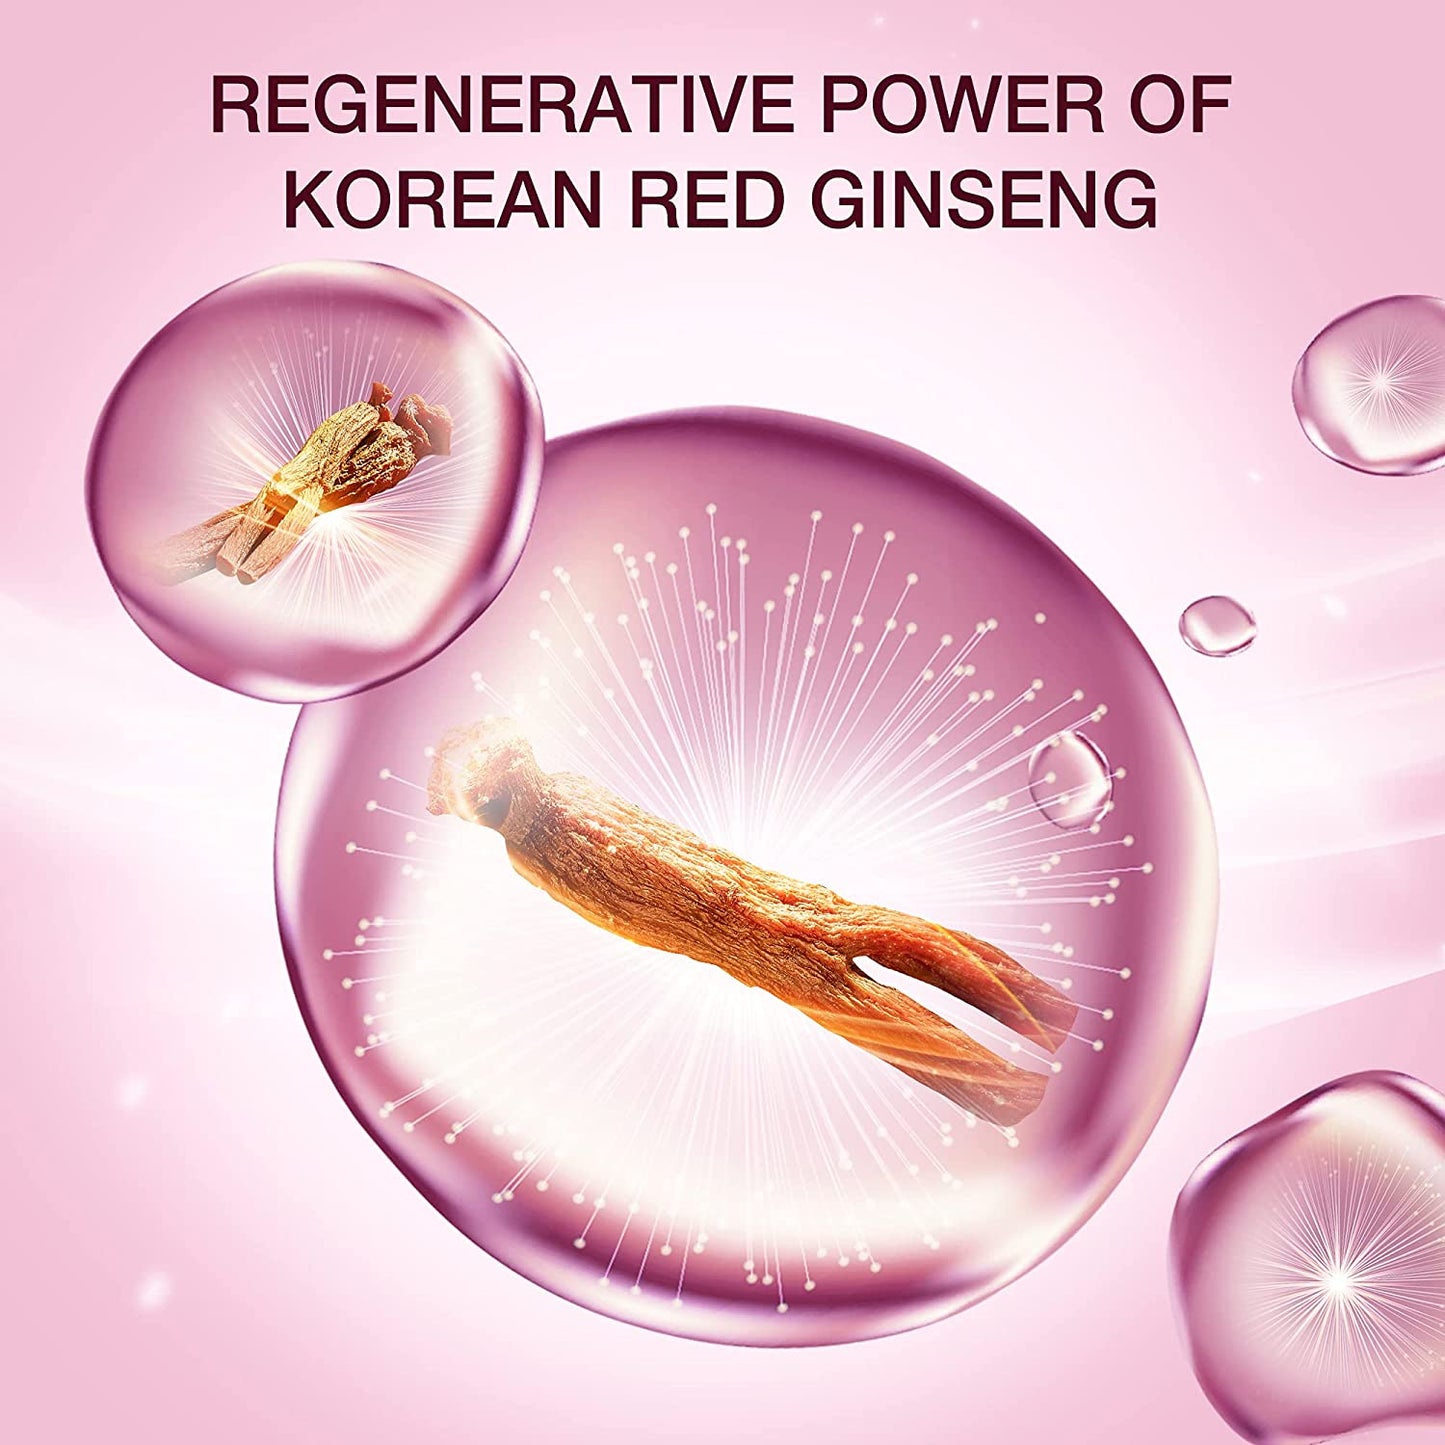 Anti-Aging Serum DONGINBI Daily Defense Serum EX, Anti-Wrinkle & Antioxidant Serum for Face, Korean Red Ginseng Skin Care - 1.01Oz, 30ml